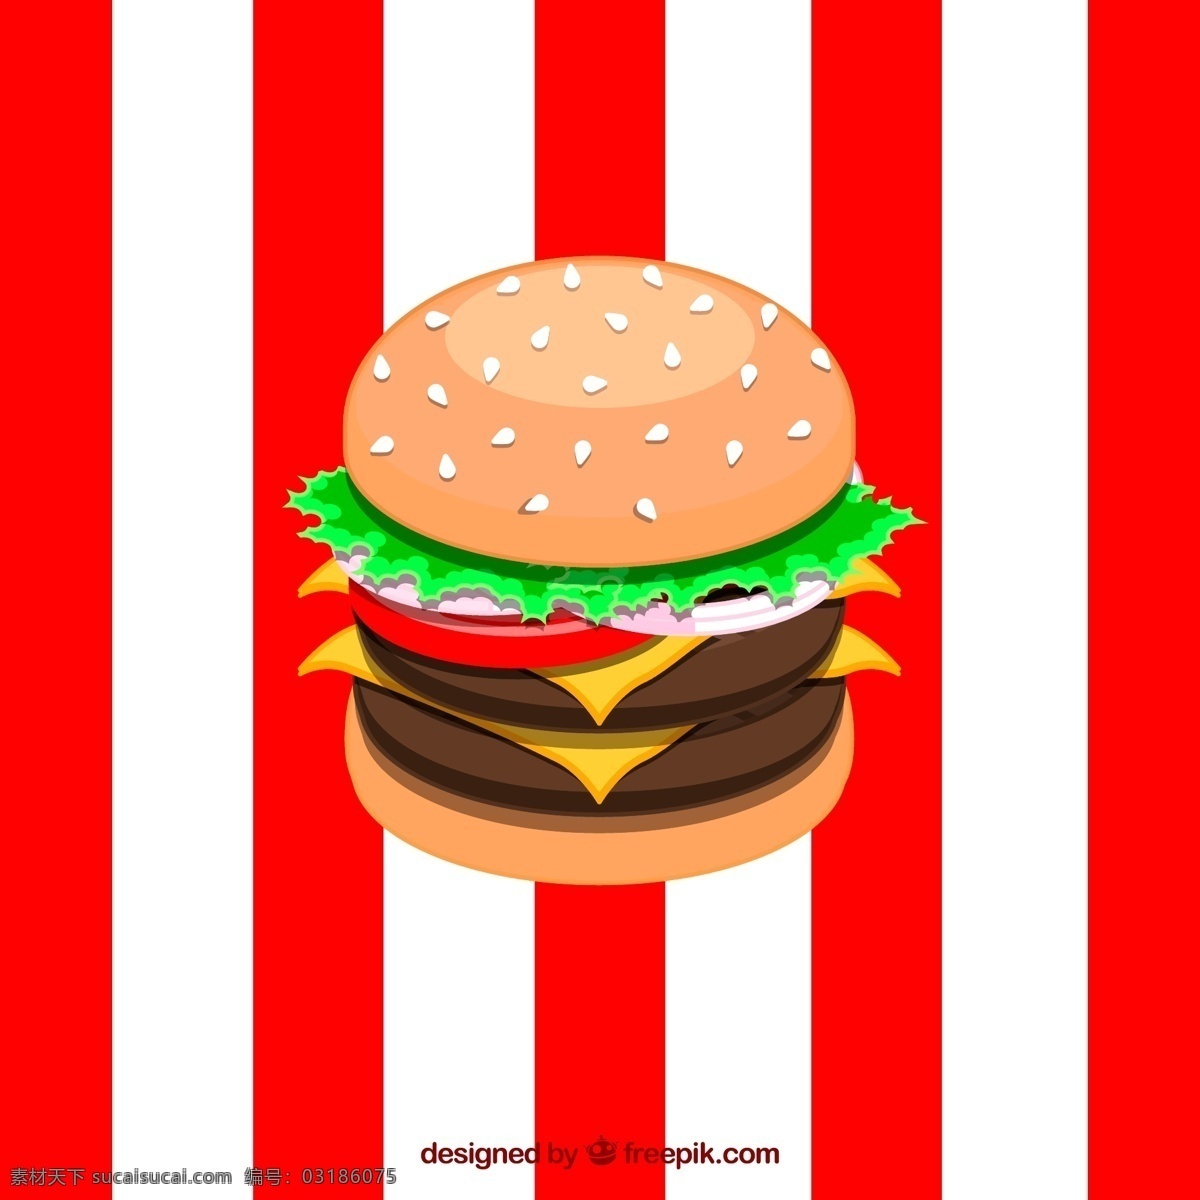 汉堡包 矢量图 ai格式 含 预览 图 食物 快餐食品 双层汉堡 矢量图... 红色